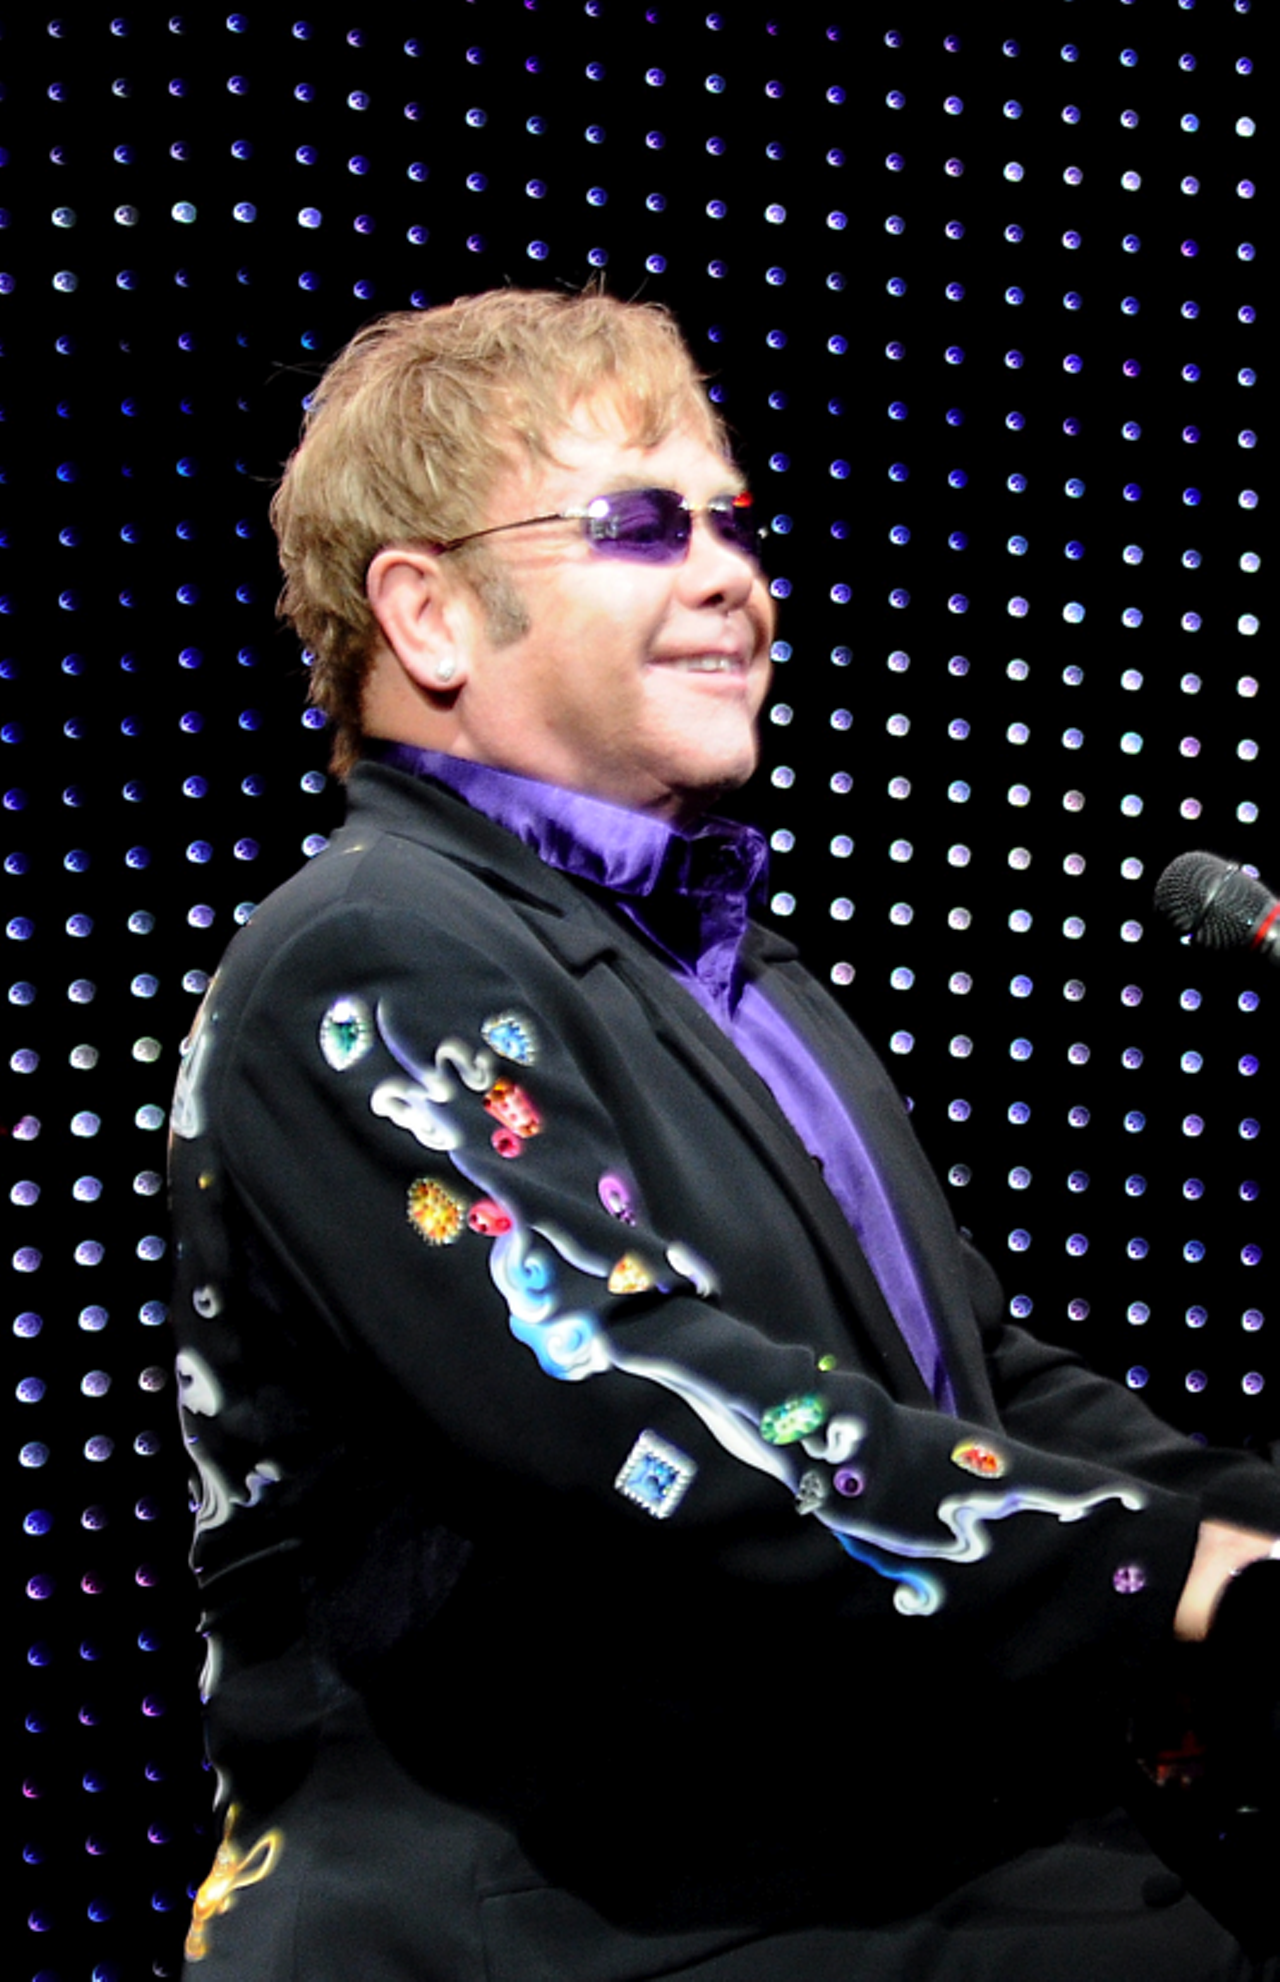 Elton John at Blossom